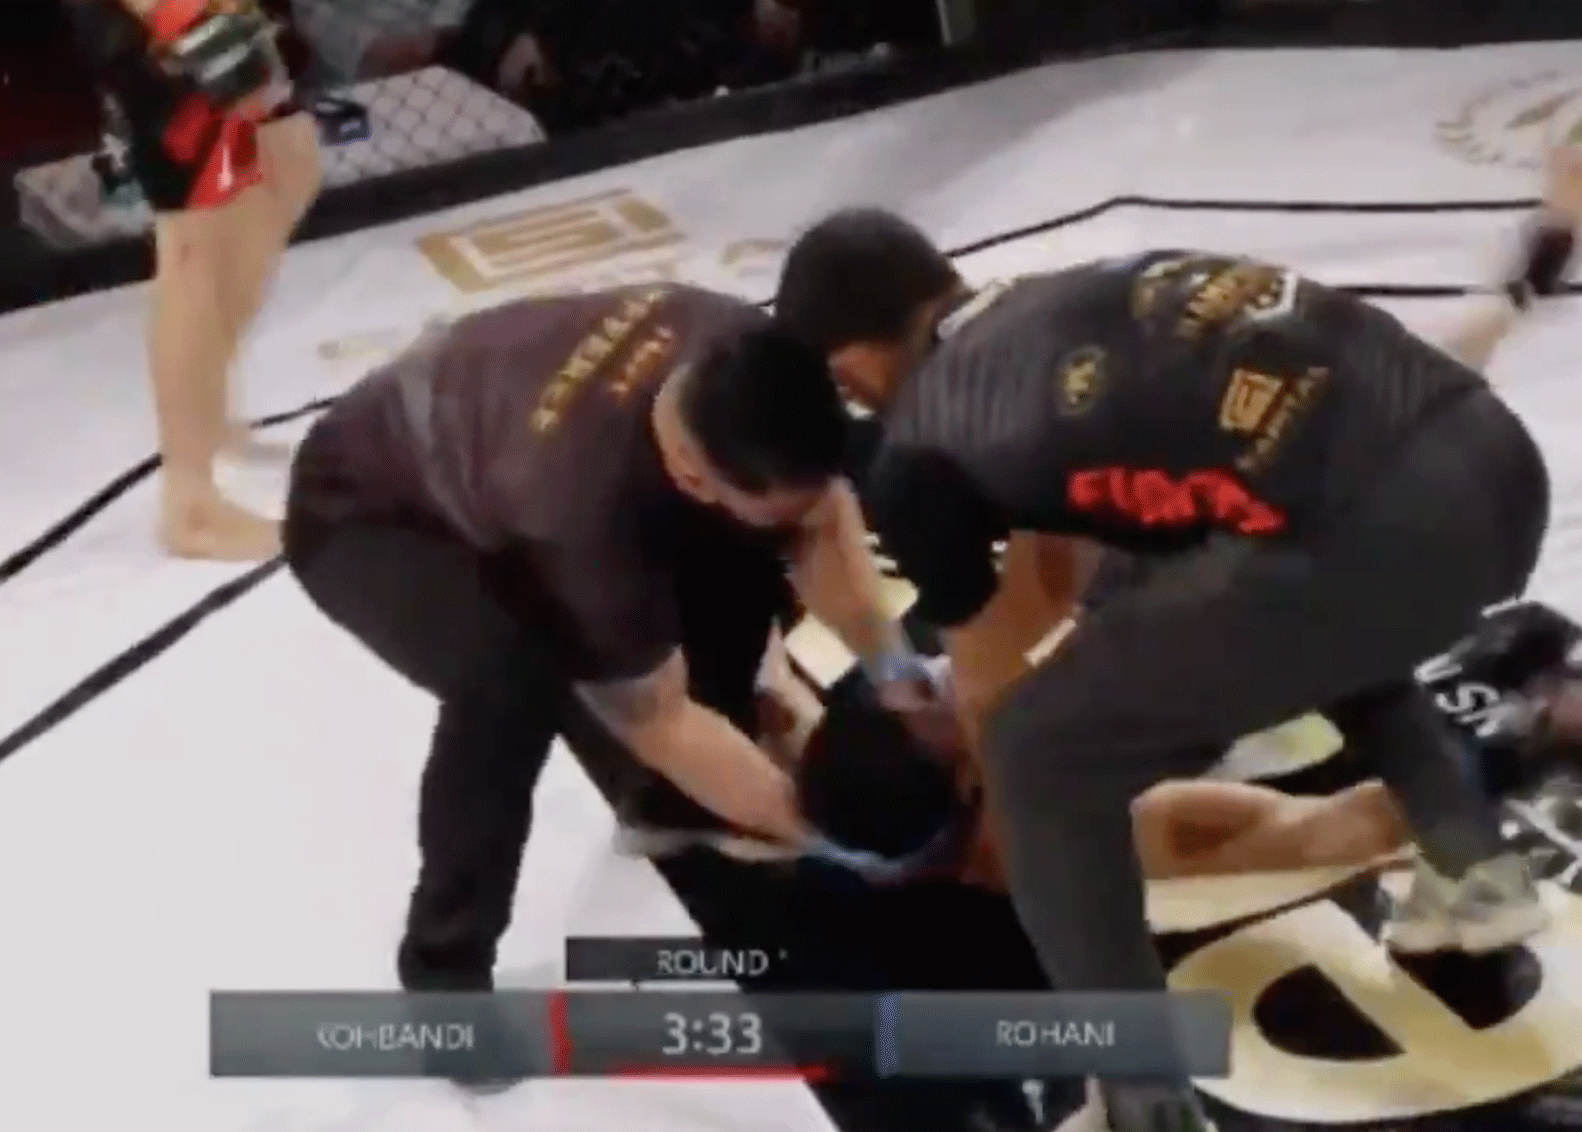 Bijna-doodervaring tijdens bruut MMA-gevecht vandaag (video)